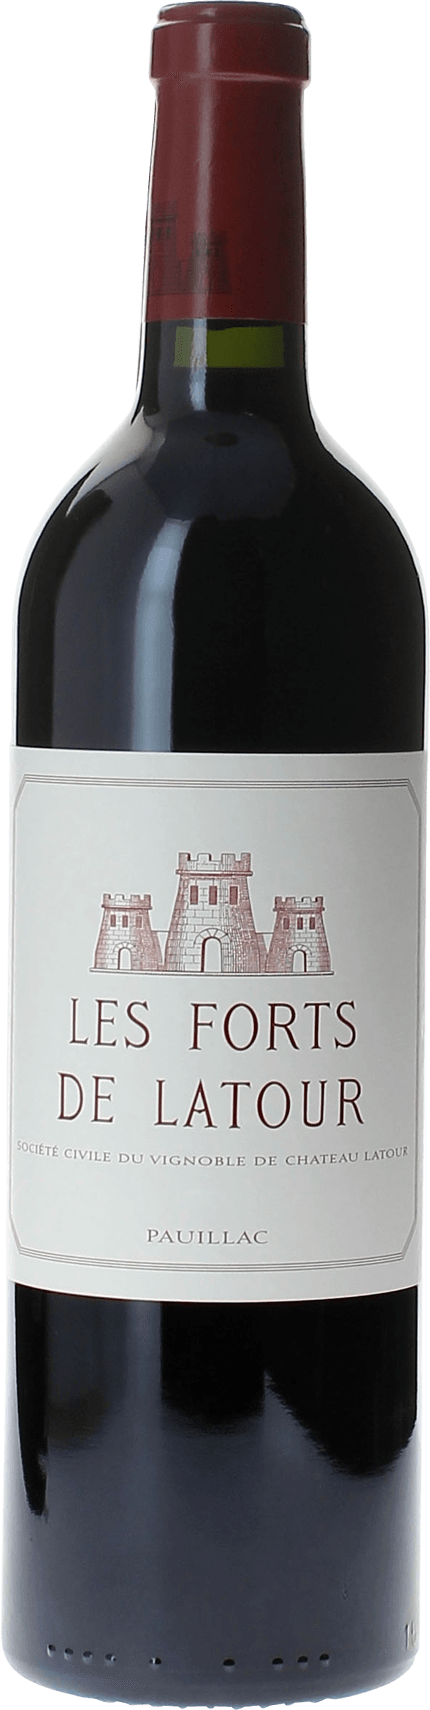 Les forts de latour 2004 2me vin de LATOUR Pauillac, Bordeaux rouge